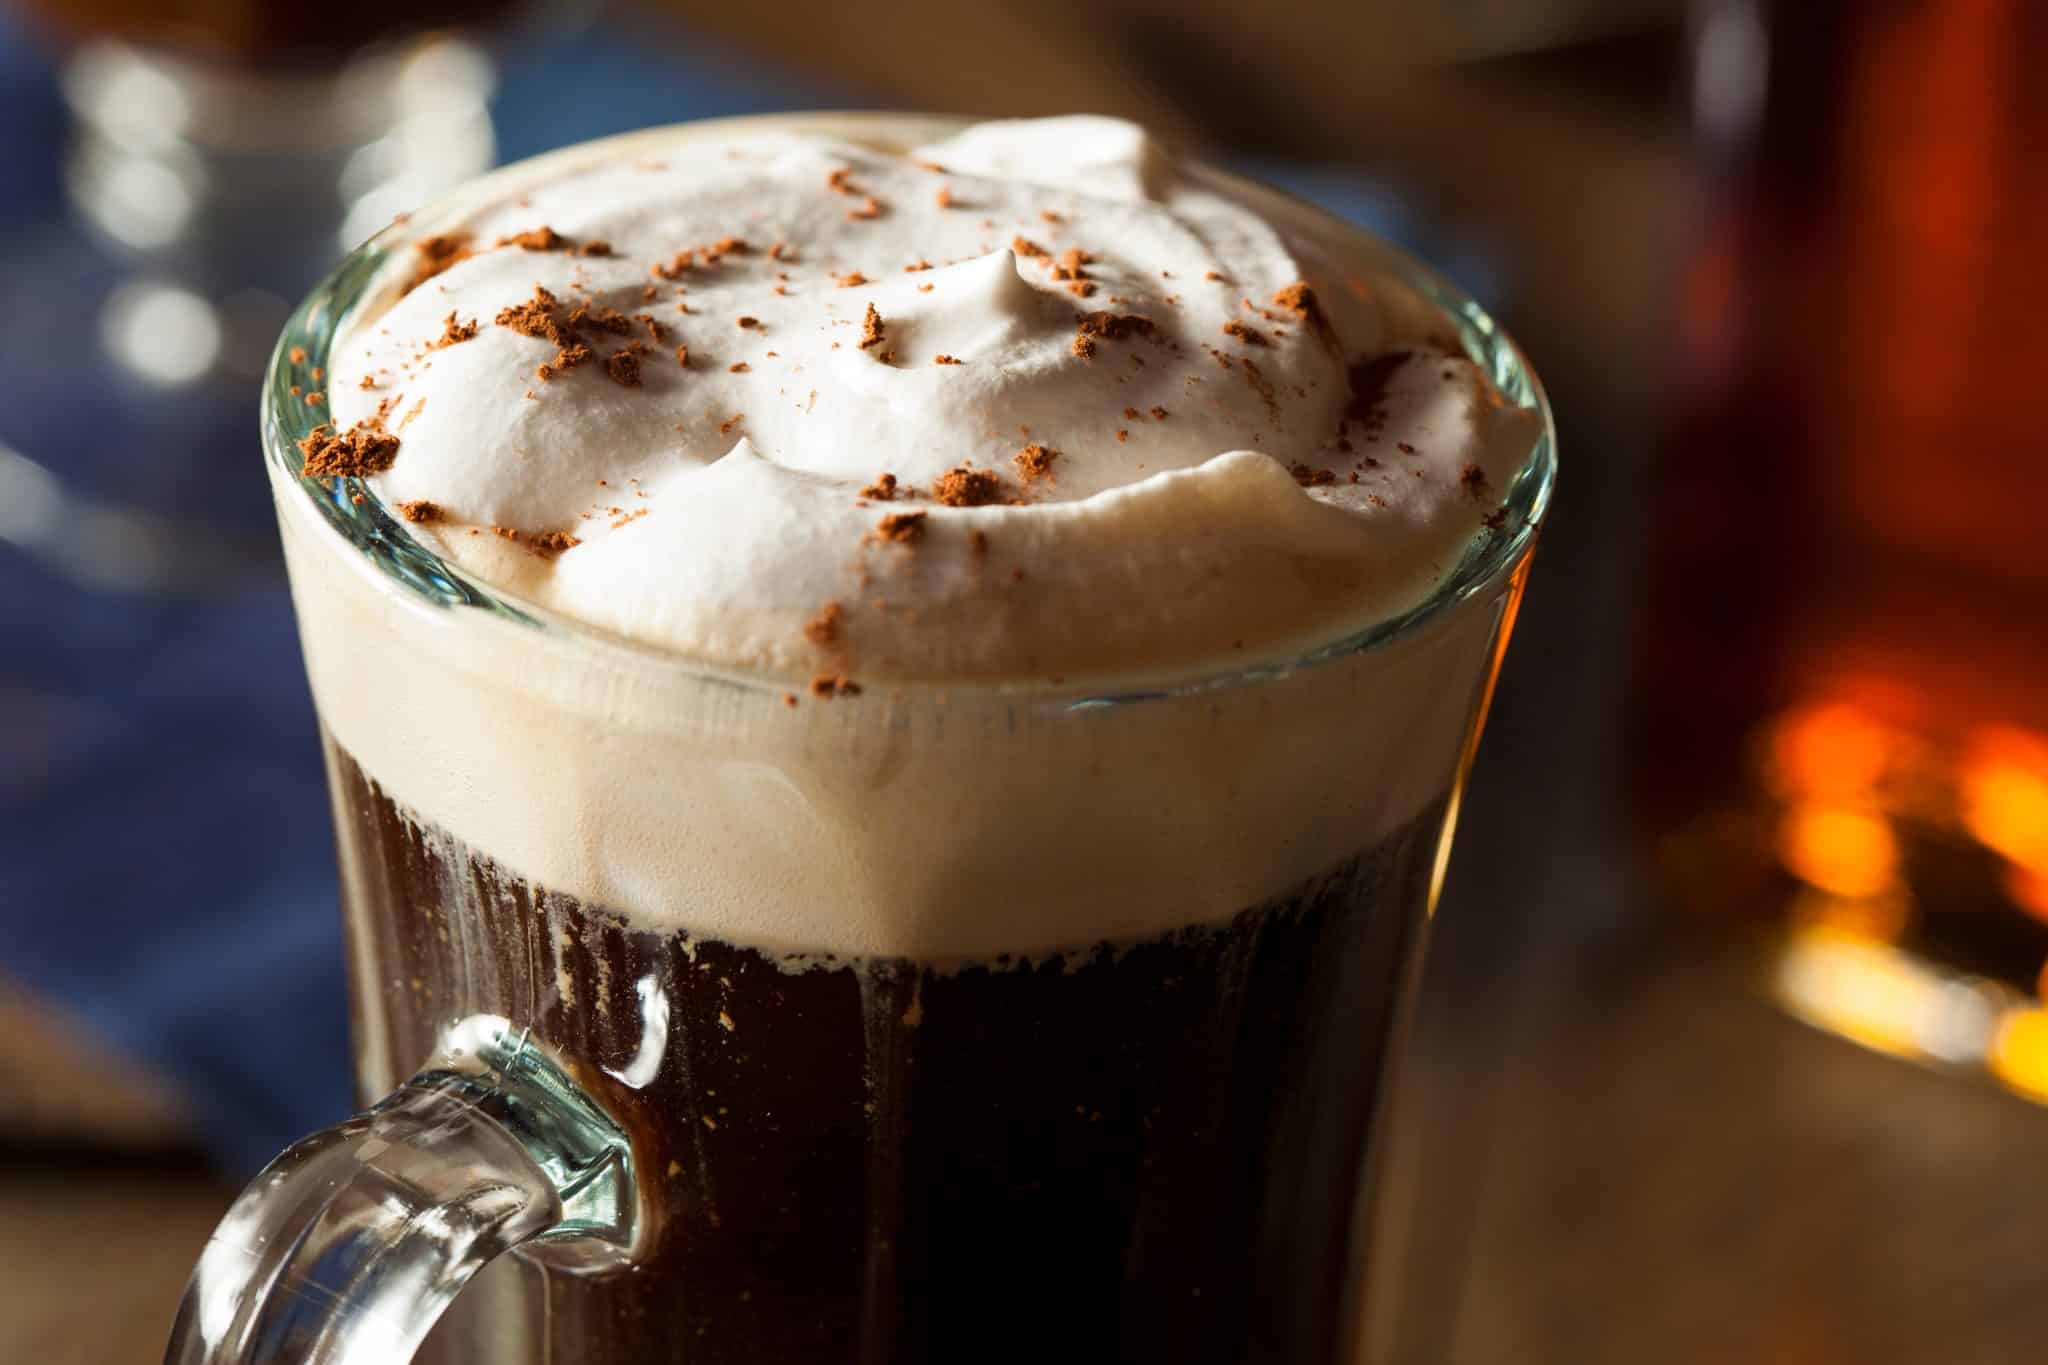 szklanka z kawą po irlandzku, obsypana kakao